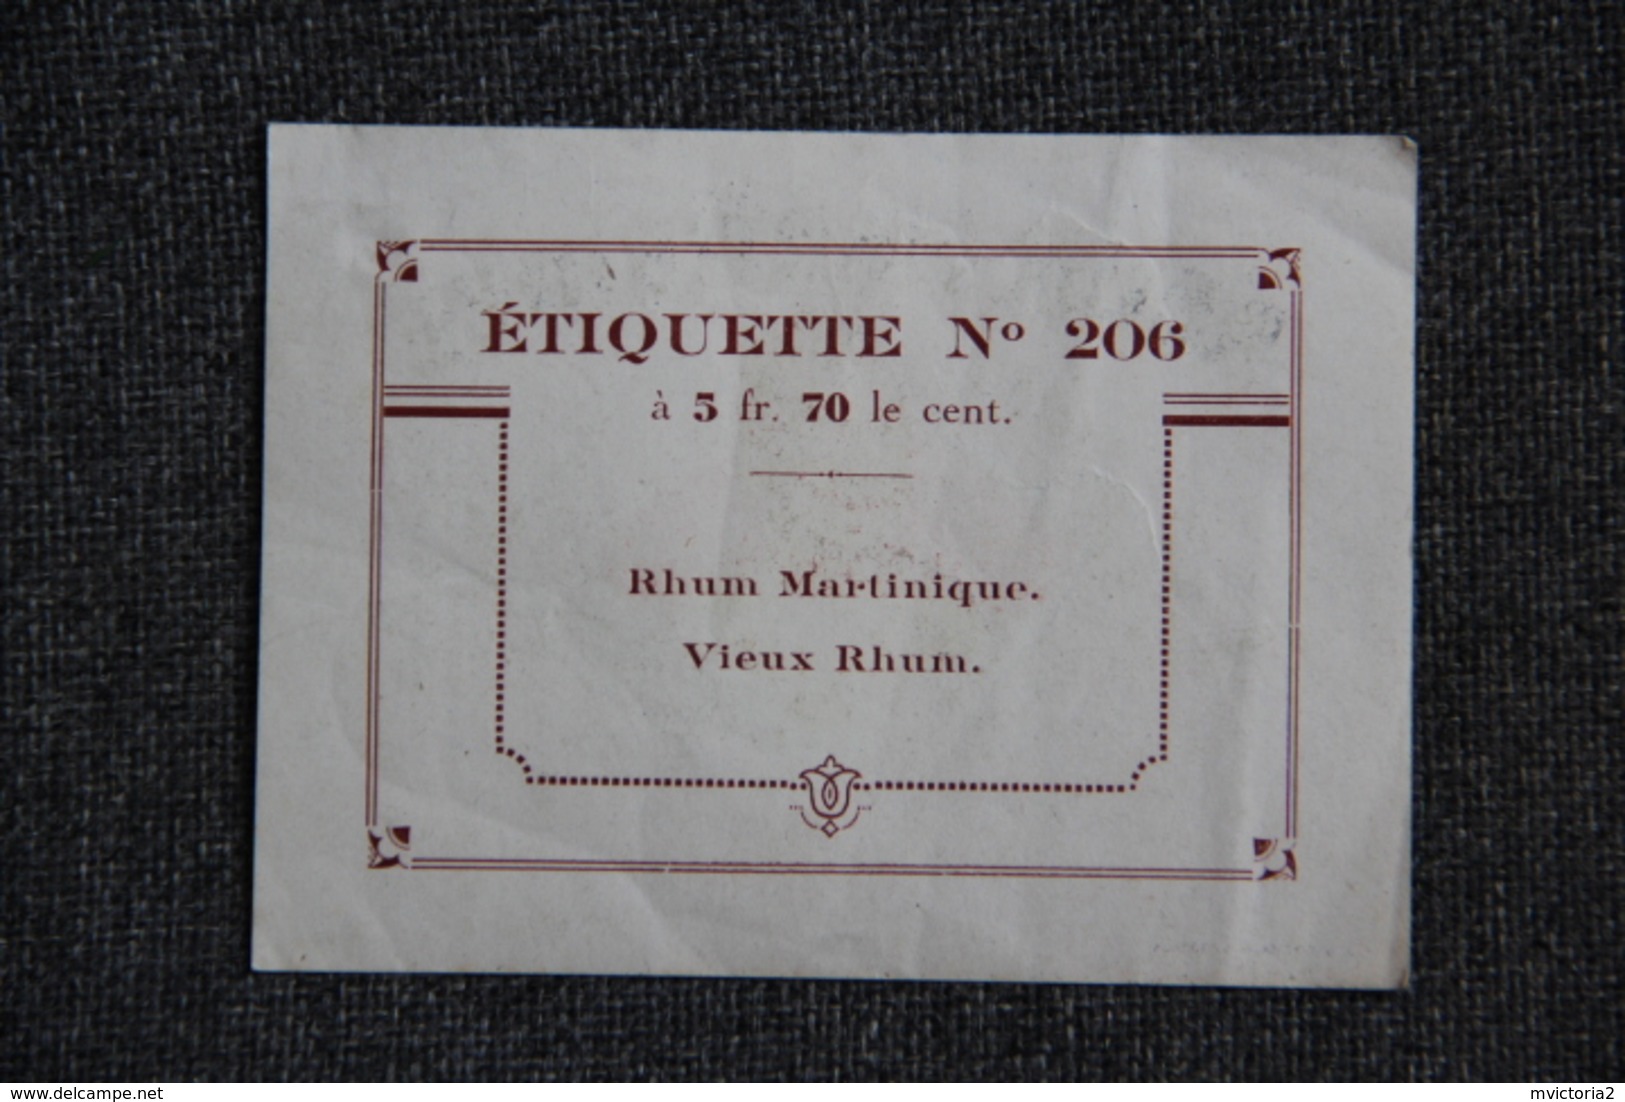 Etiquette - RHUM MARTINIQUE, Vieux Rhum. - Rum